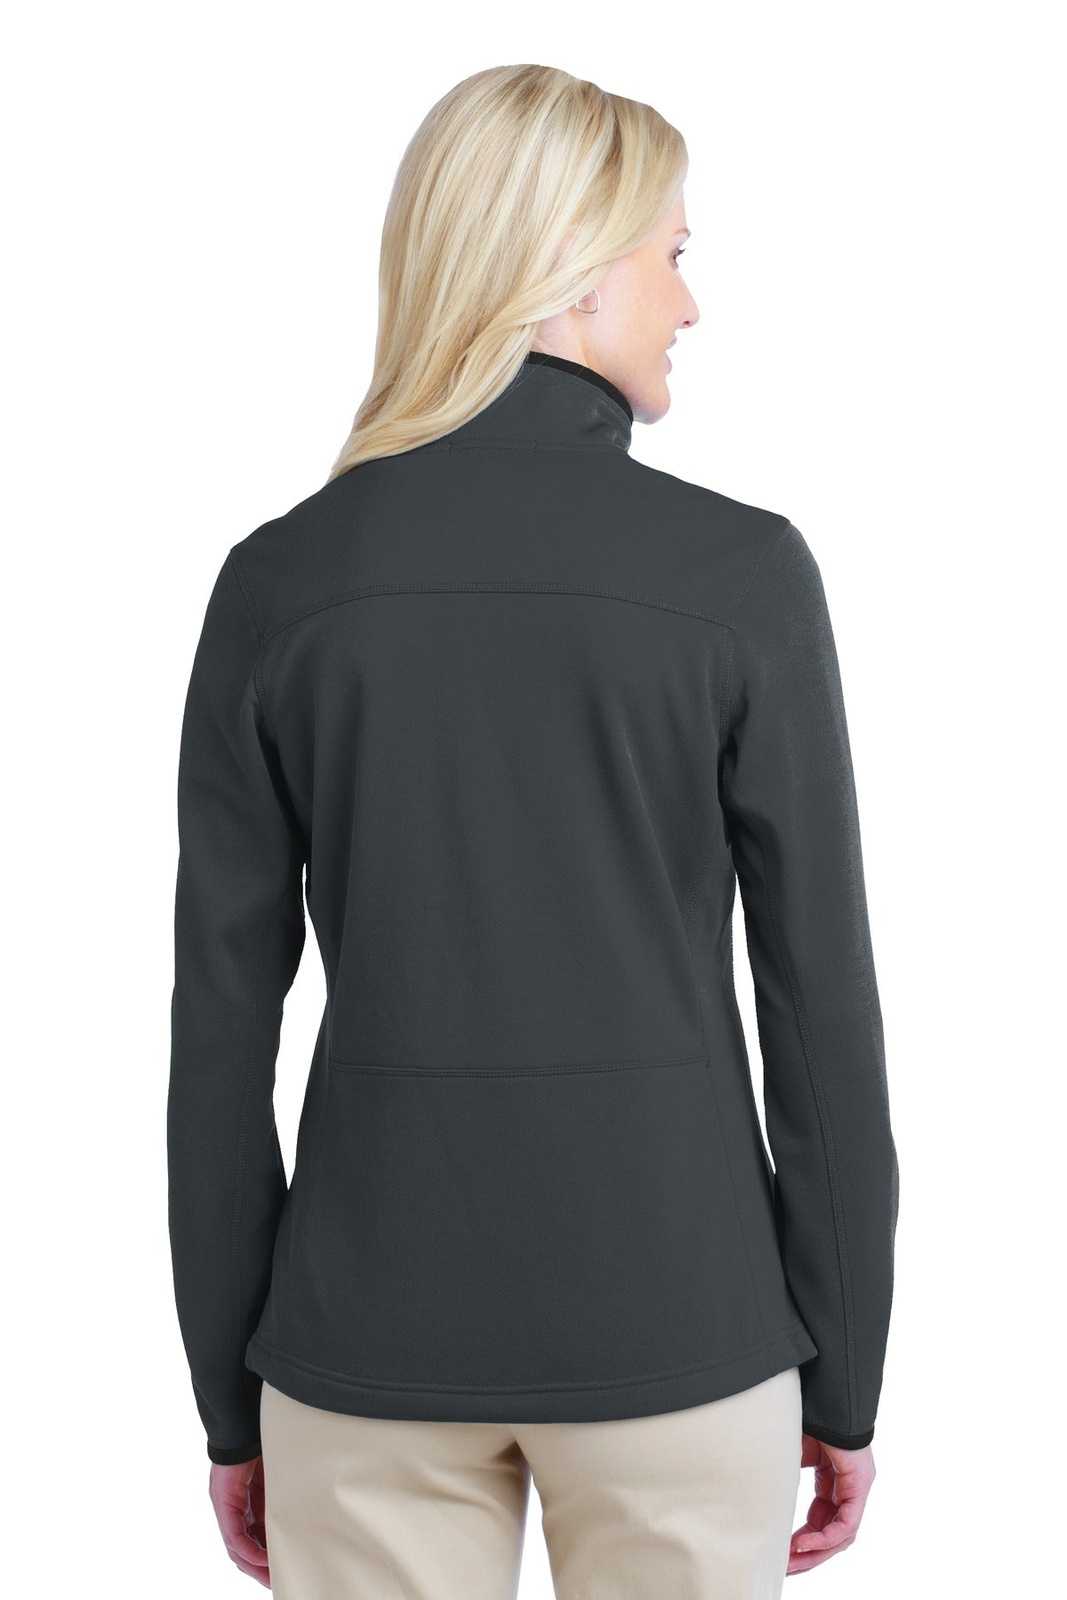 Port Authority L222 Ladies Pique Fleece Jacket - Graphite - HIT a Double - 2